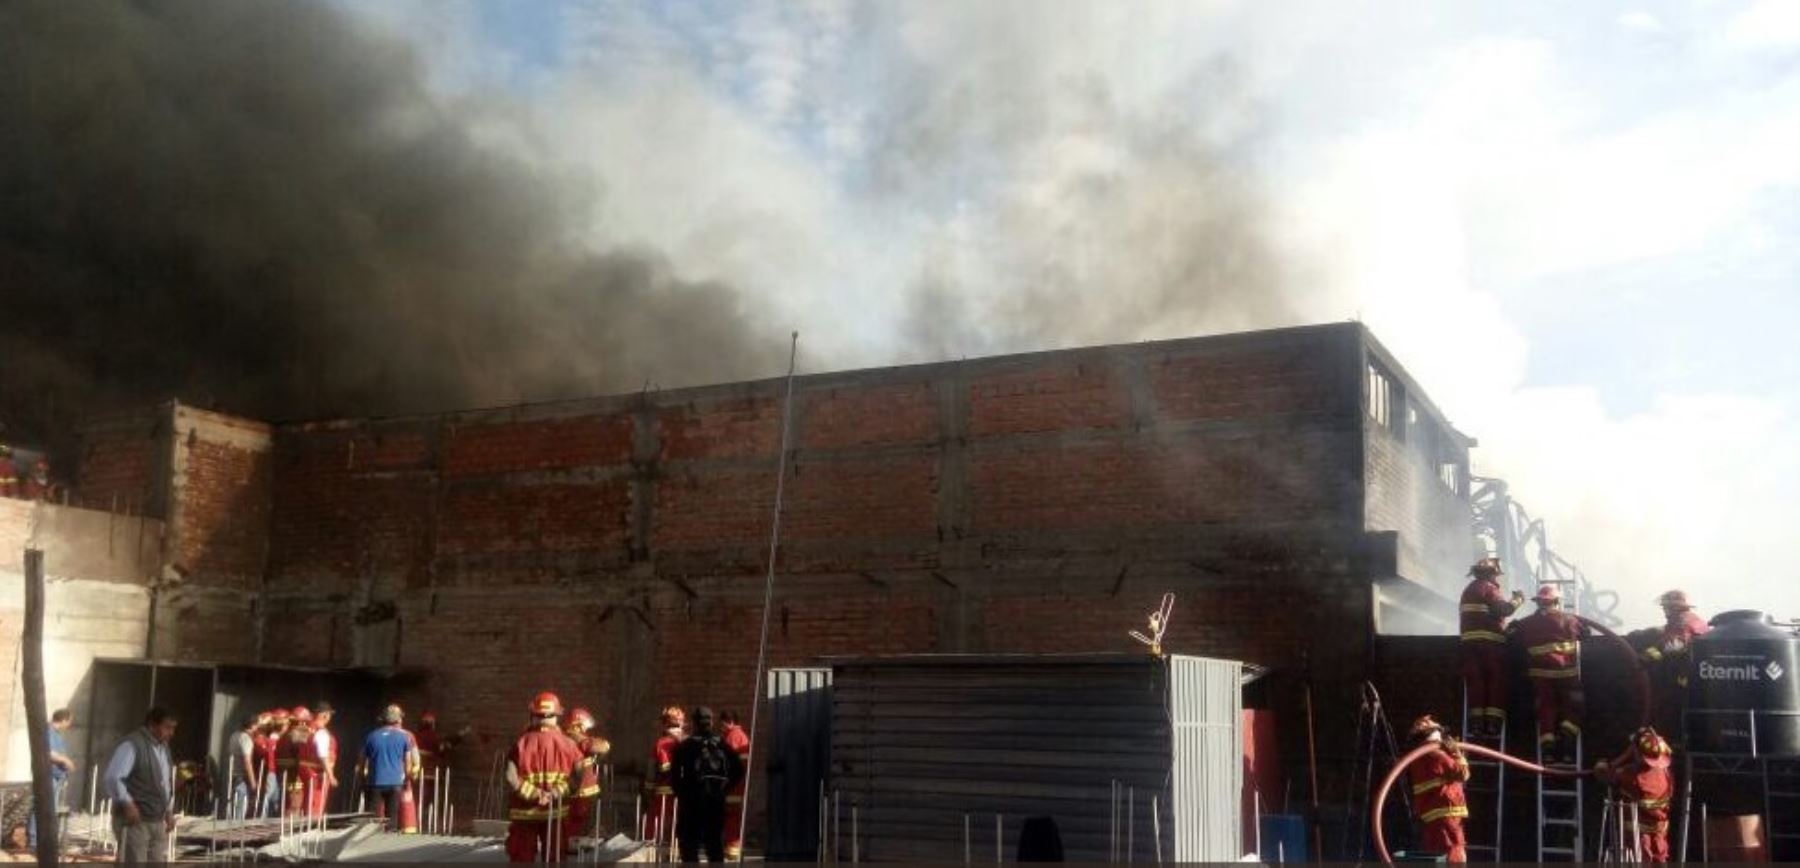 Controlan incendio en galerías de la ciudad de Arequipa, con la participación de 80 bomberos. Foto: Bomberos Perú.